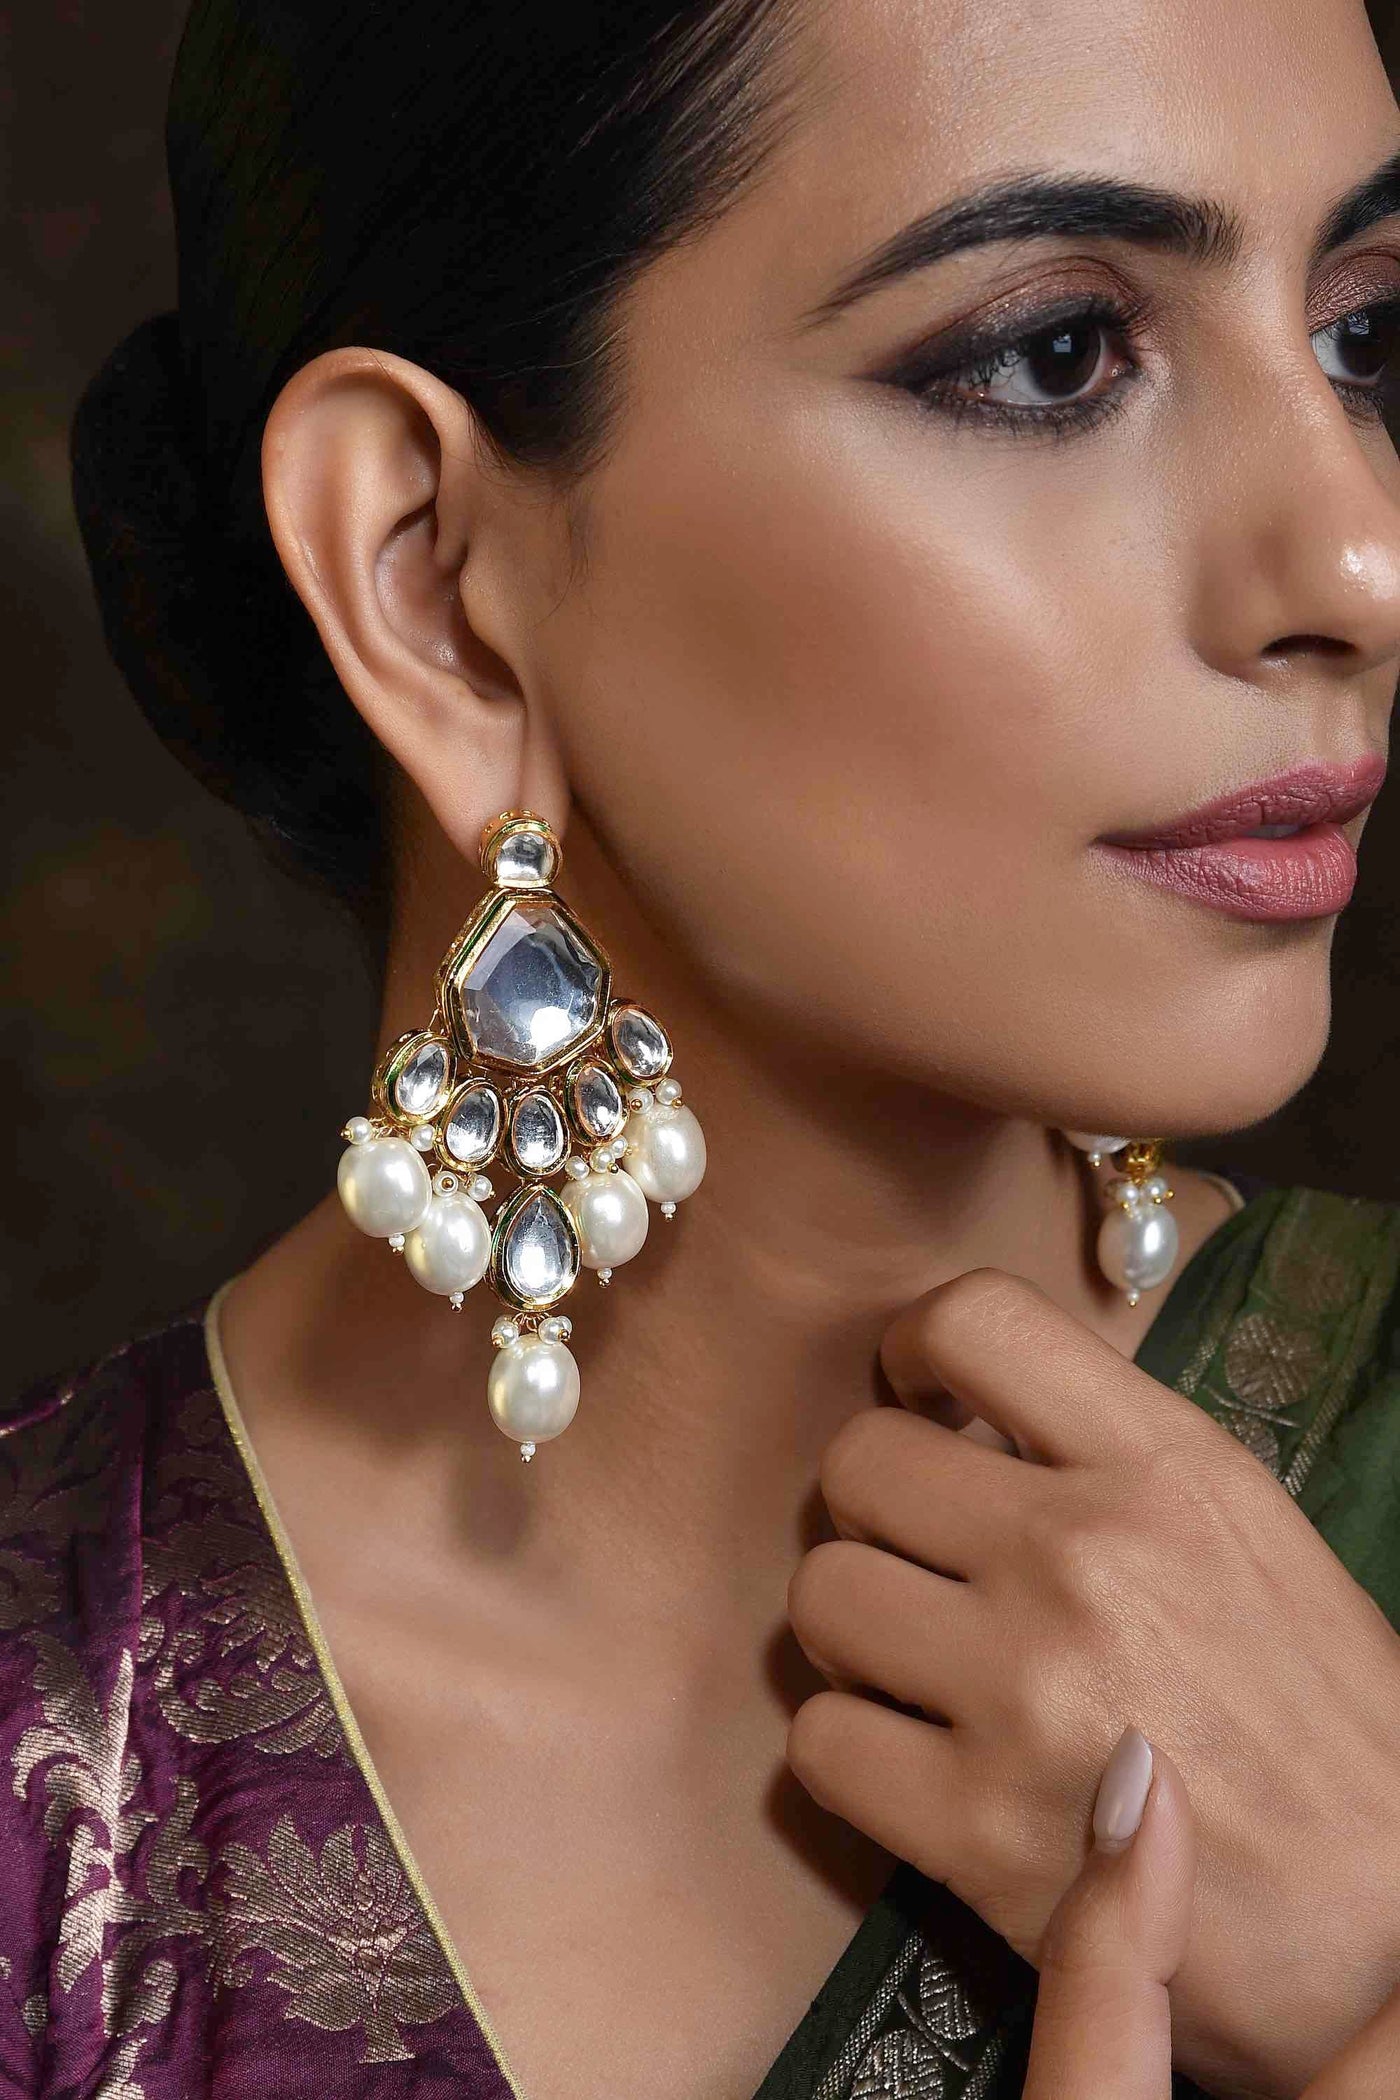 Adharsha White Gold Plated Polki Dangler Earrings